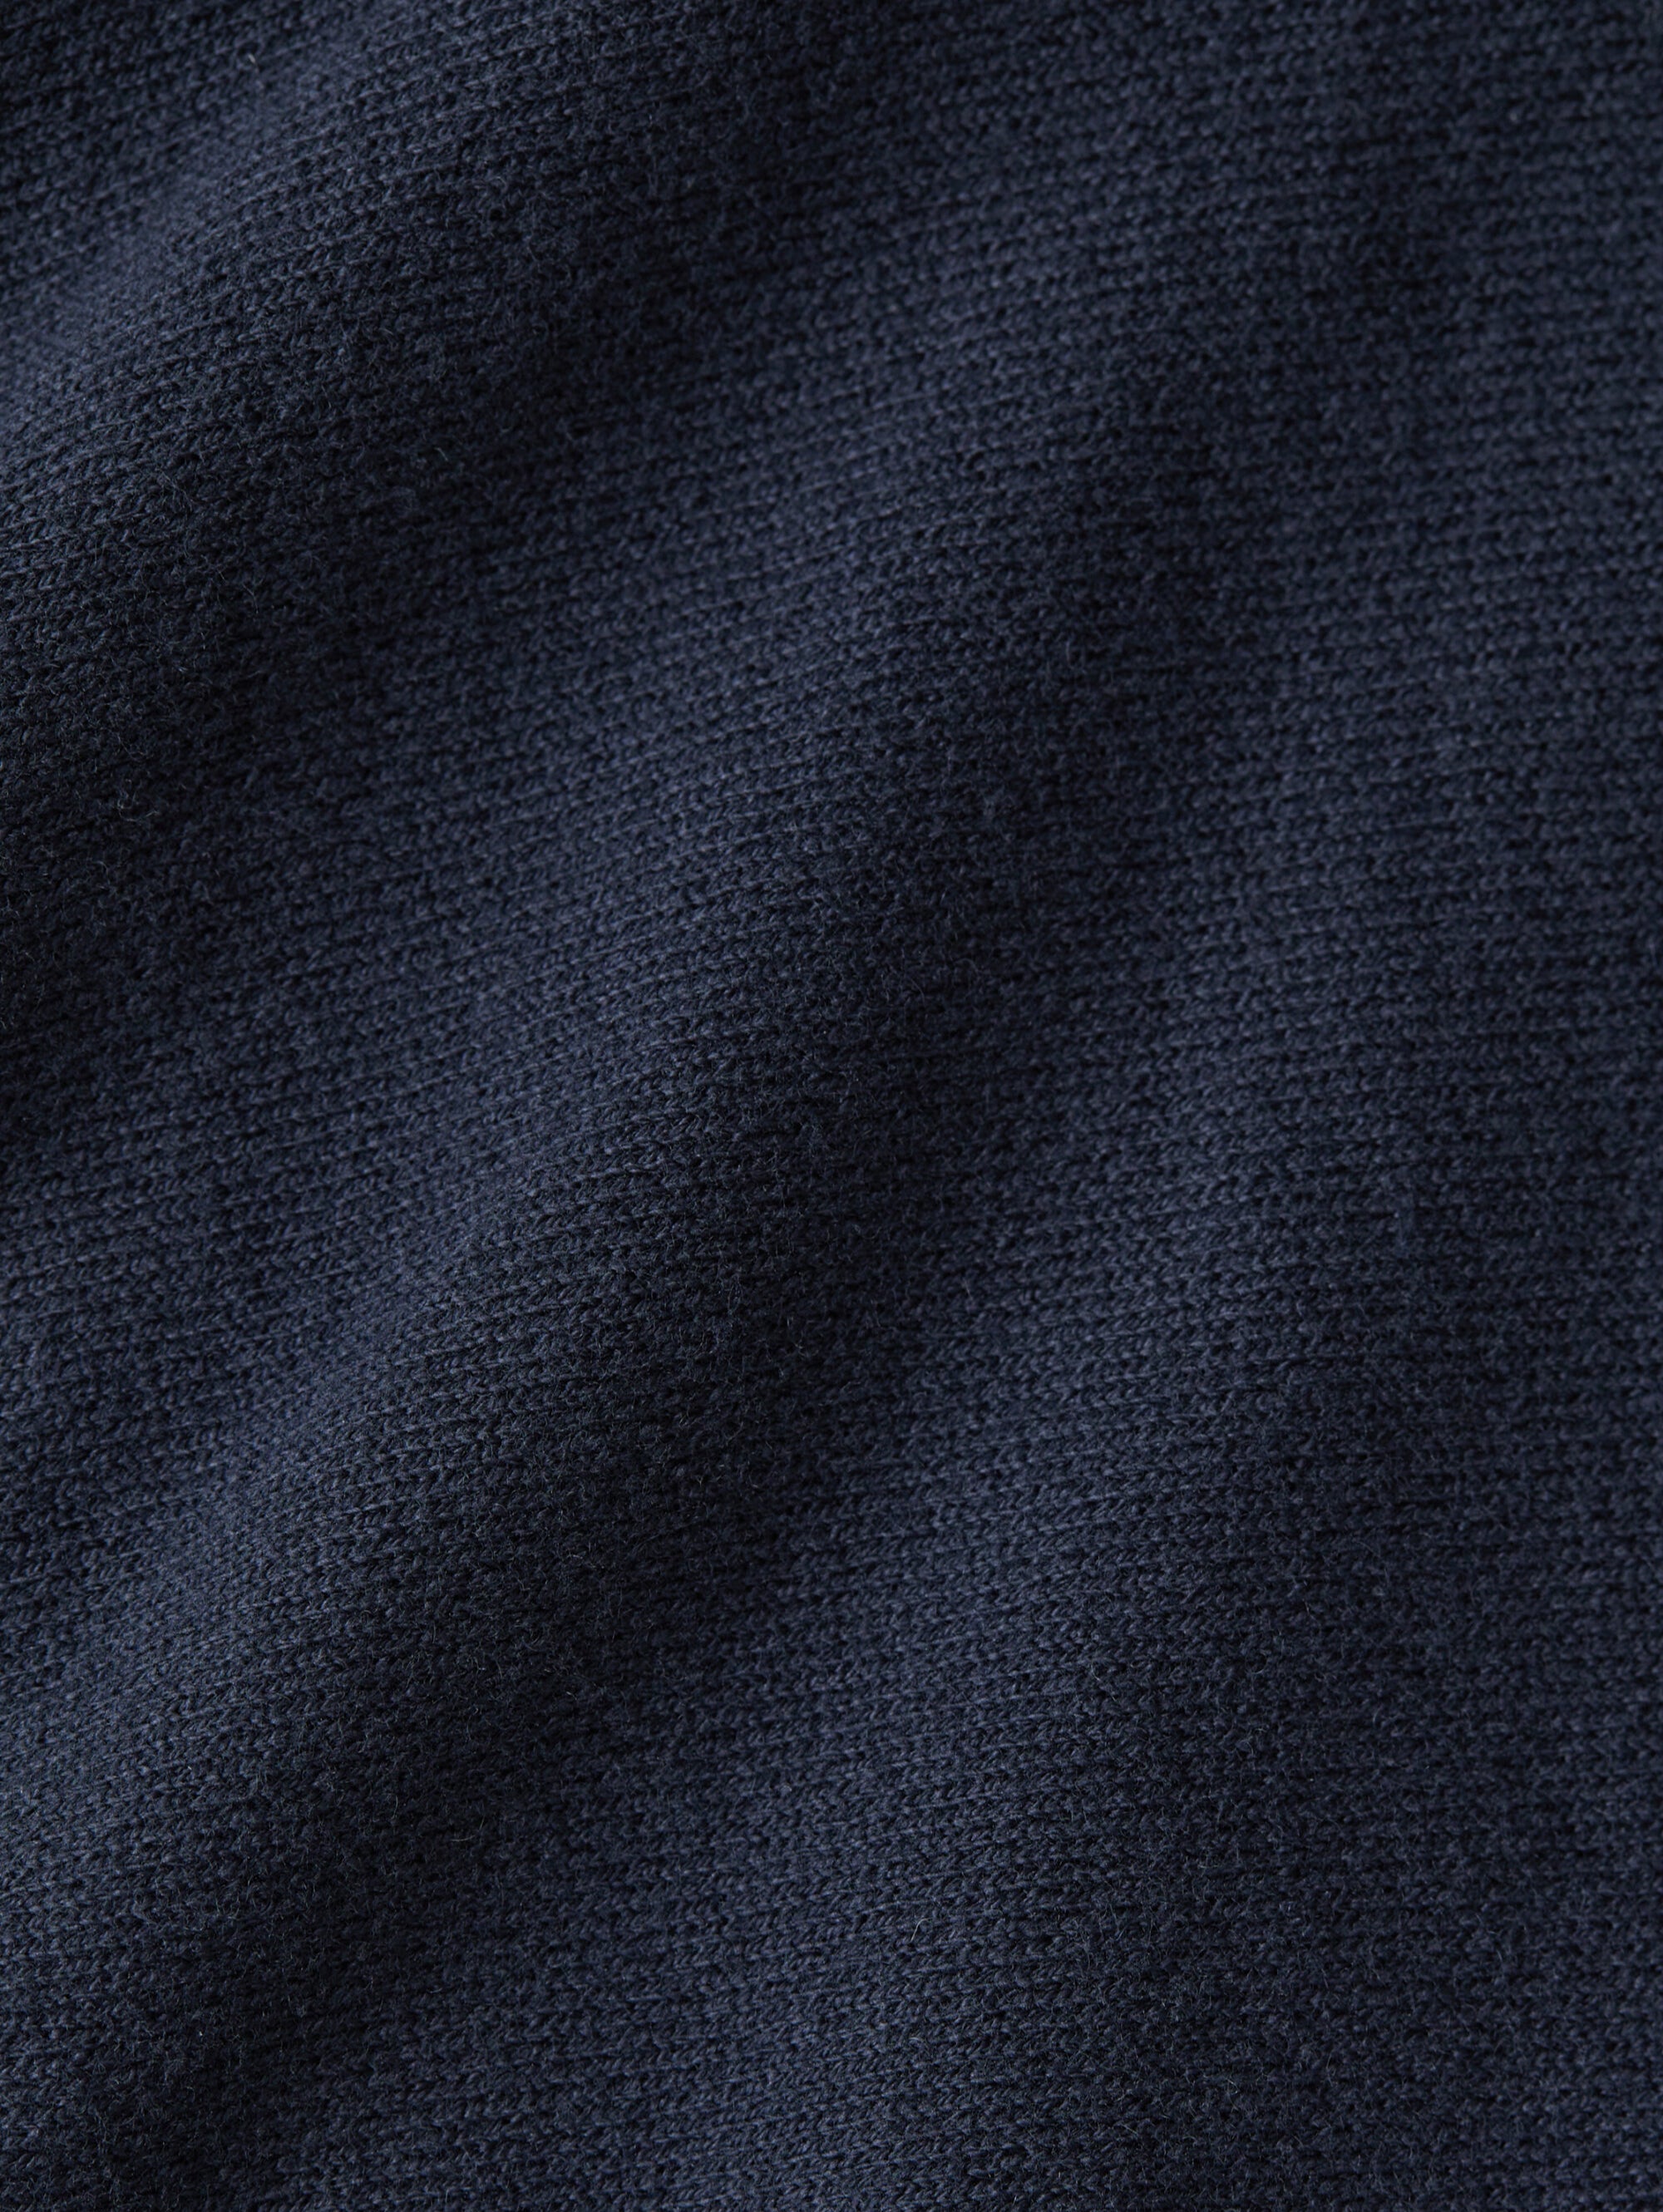 Midnight Blue Cotton Blend Knit Sweatshirt